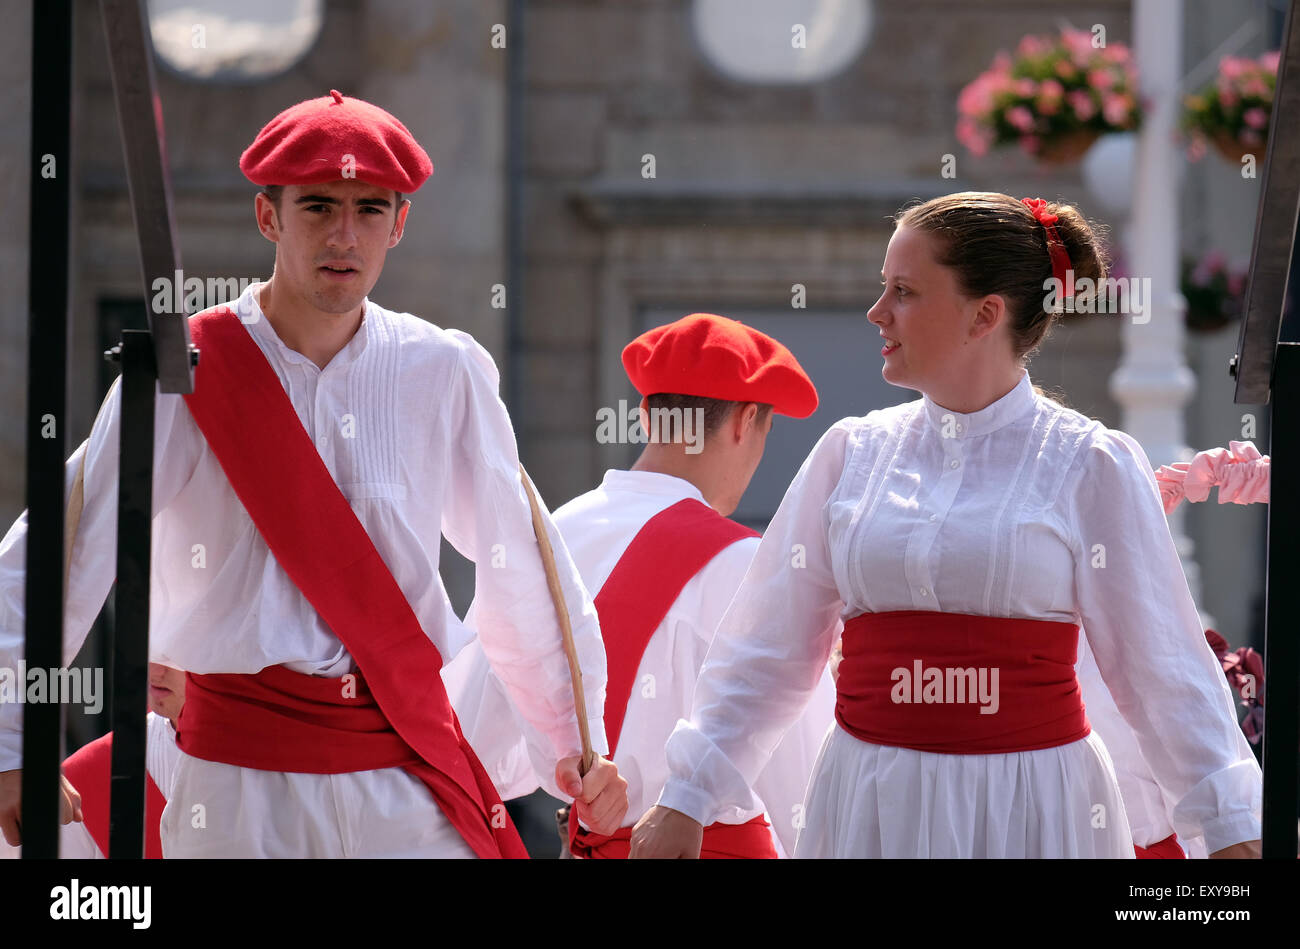 Les membres du groupe folklorique Lagunekin de Bardos, France, durant le 49e Festival International de Folklore dans le centre de Zagreb, Croatie Banque D'Images